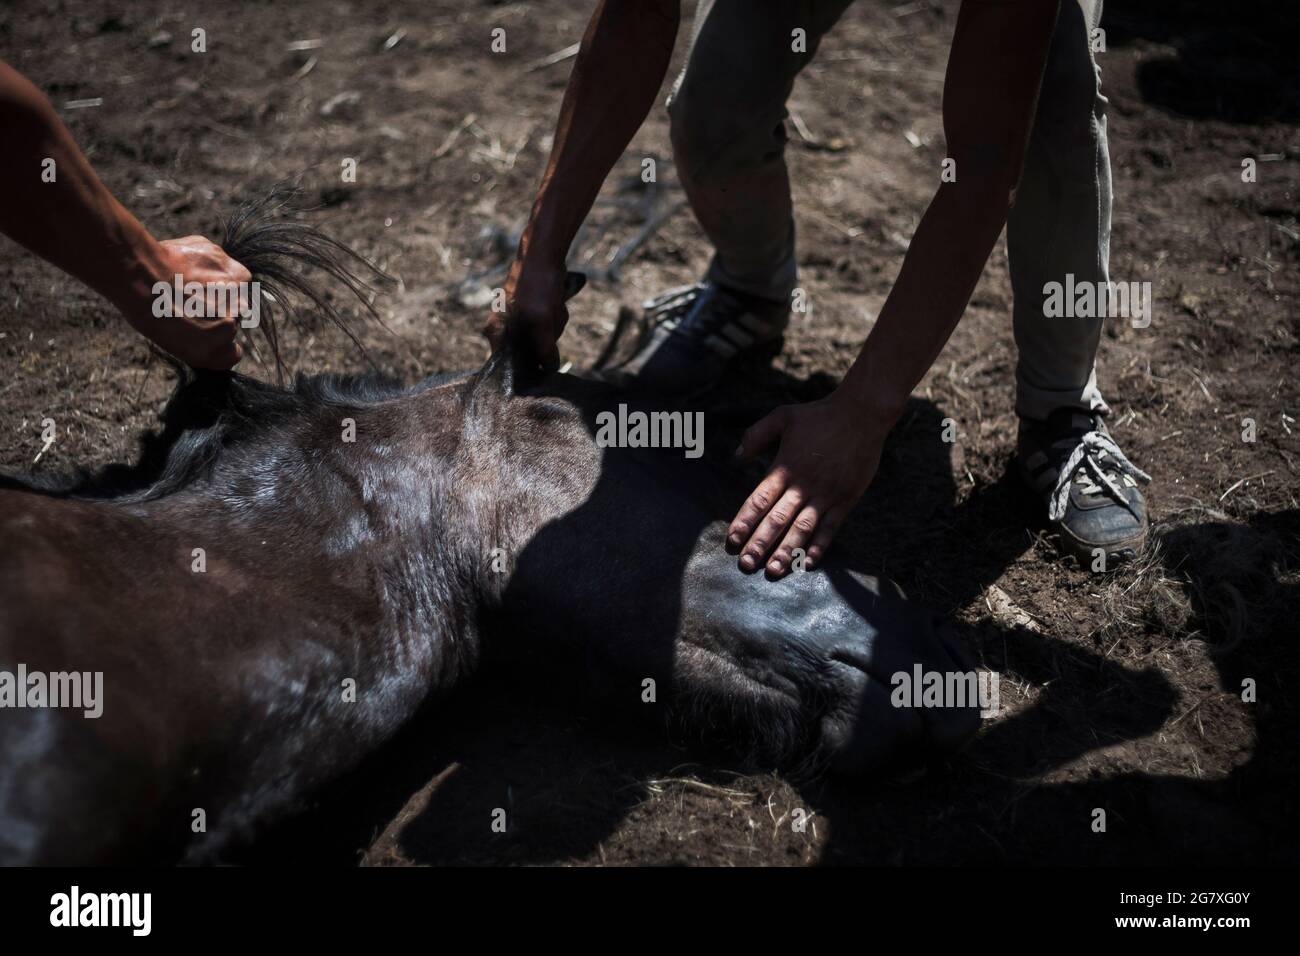 Los 'aloitadores' sujetan la cabeza de un cabalo salvaje en la Rapa das Bestas de Amil. La Rapa das Bestas es el nombre de una fiesta cultural y turís Stock Photo